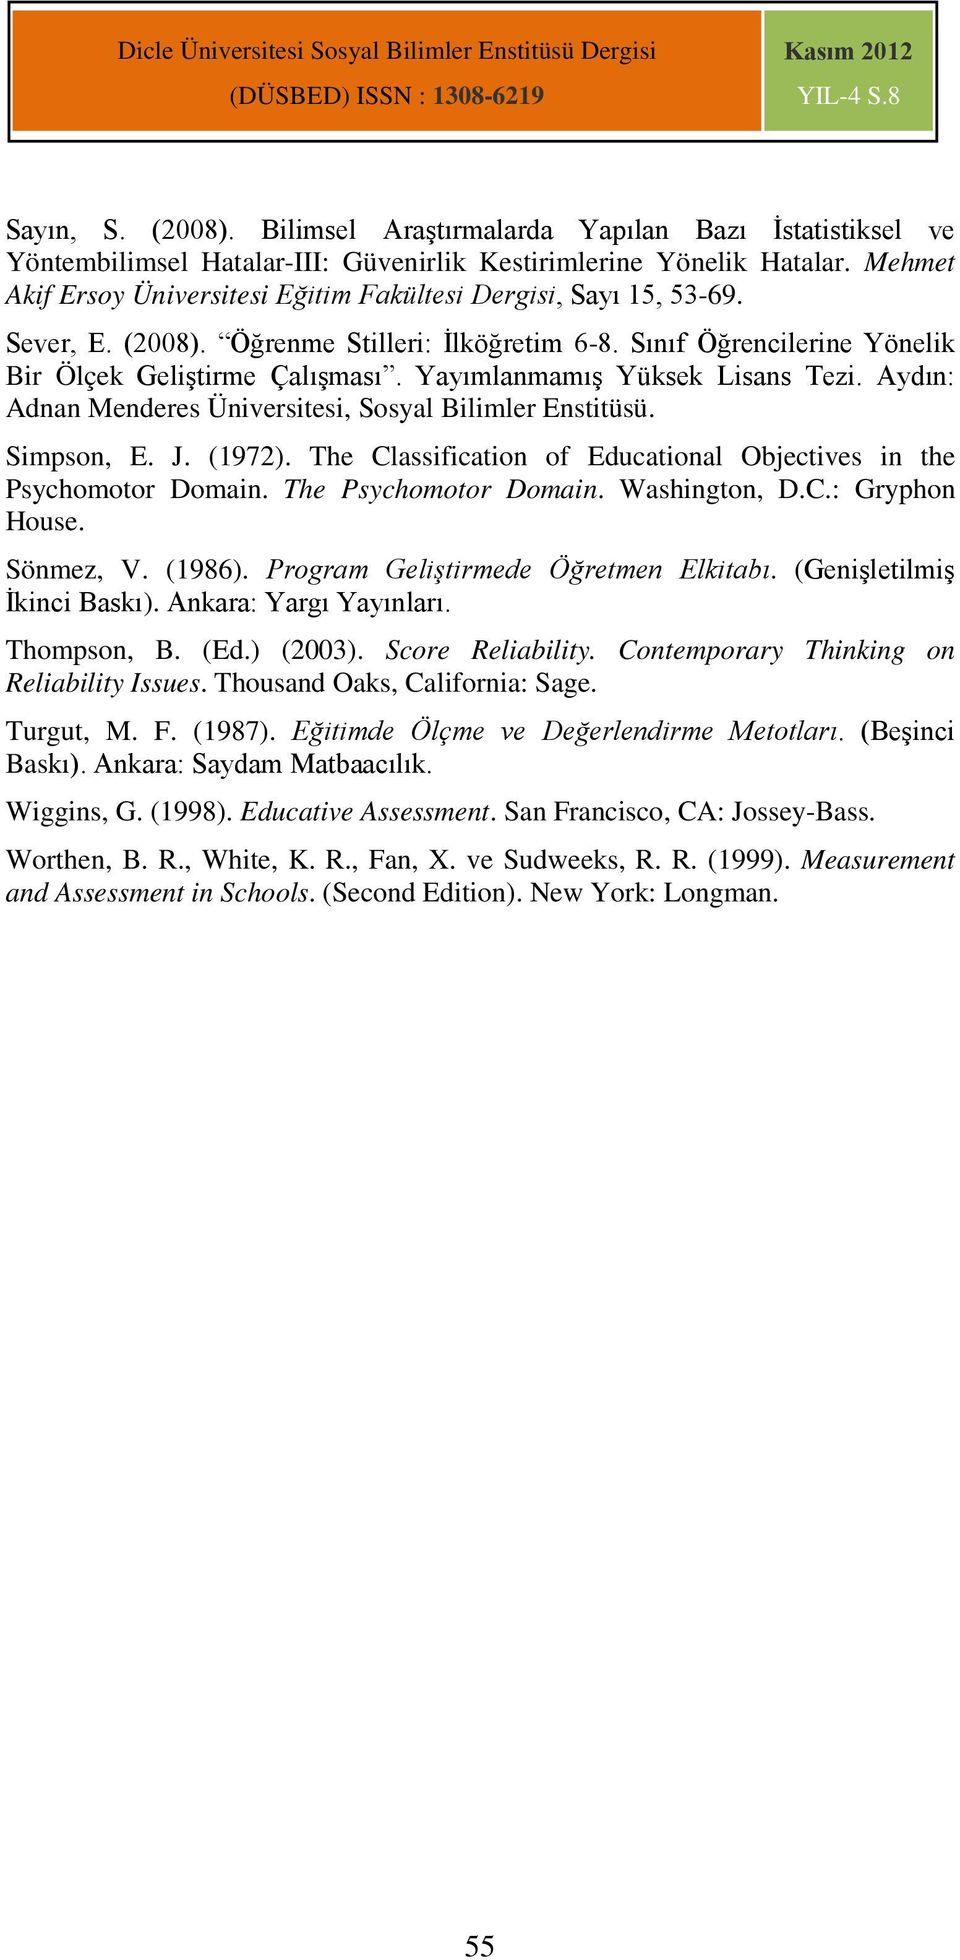 Yayımlanmamış Yüksek Lisans Tezi. Aydın: Adnan Menderes Üniversitesi, Sosyal Bilimler Enstitüsü. Simpson, E. J. (1972). The Classification of Educational Objectives in the Psychomotor Domain.